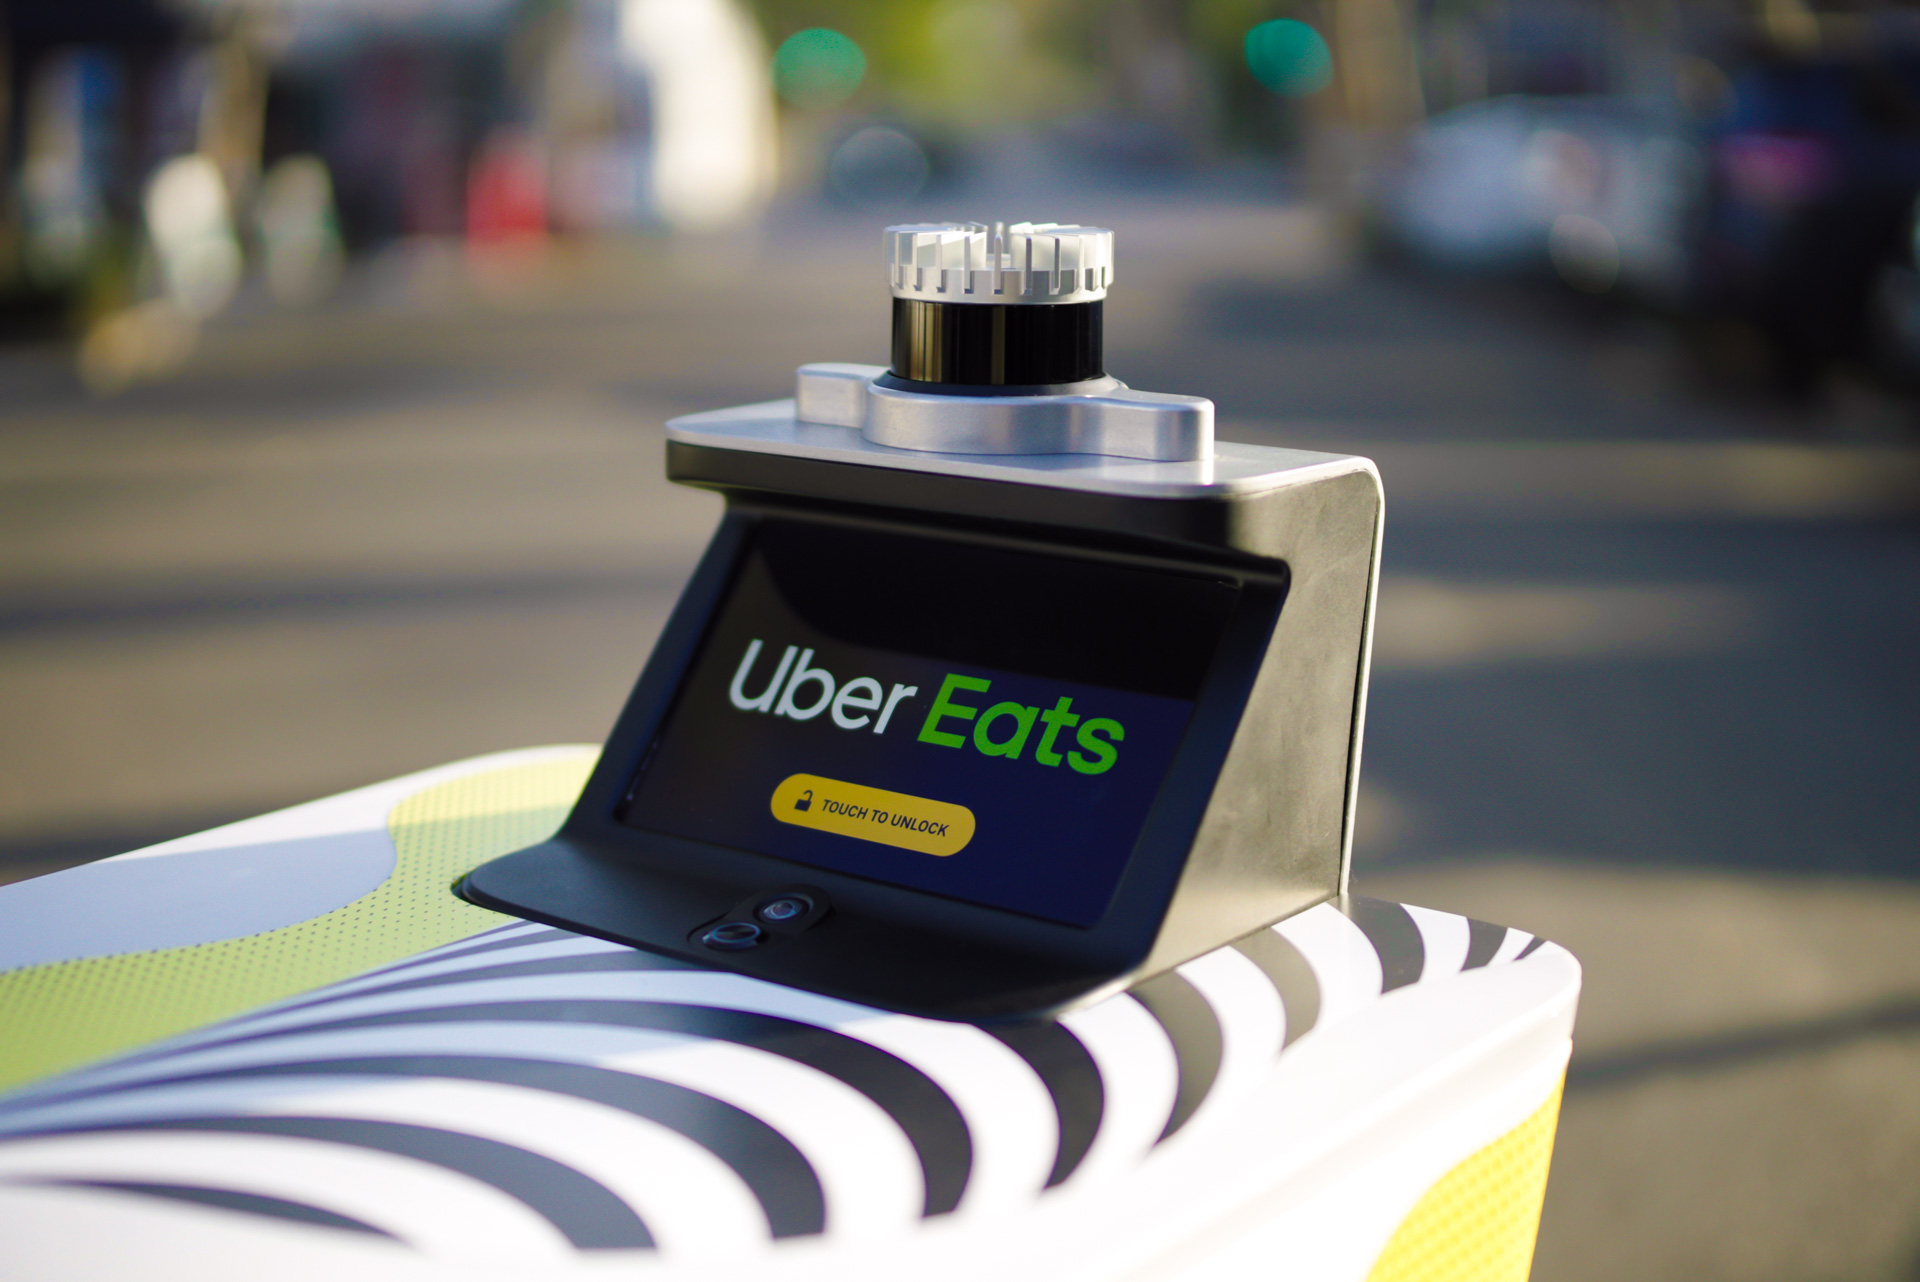 Uber Eats pilots autonomous delivery with Serve Robotics, Motional